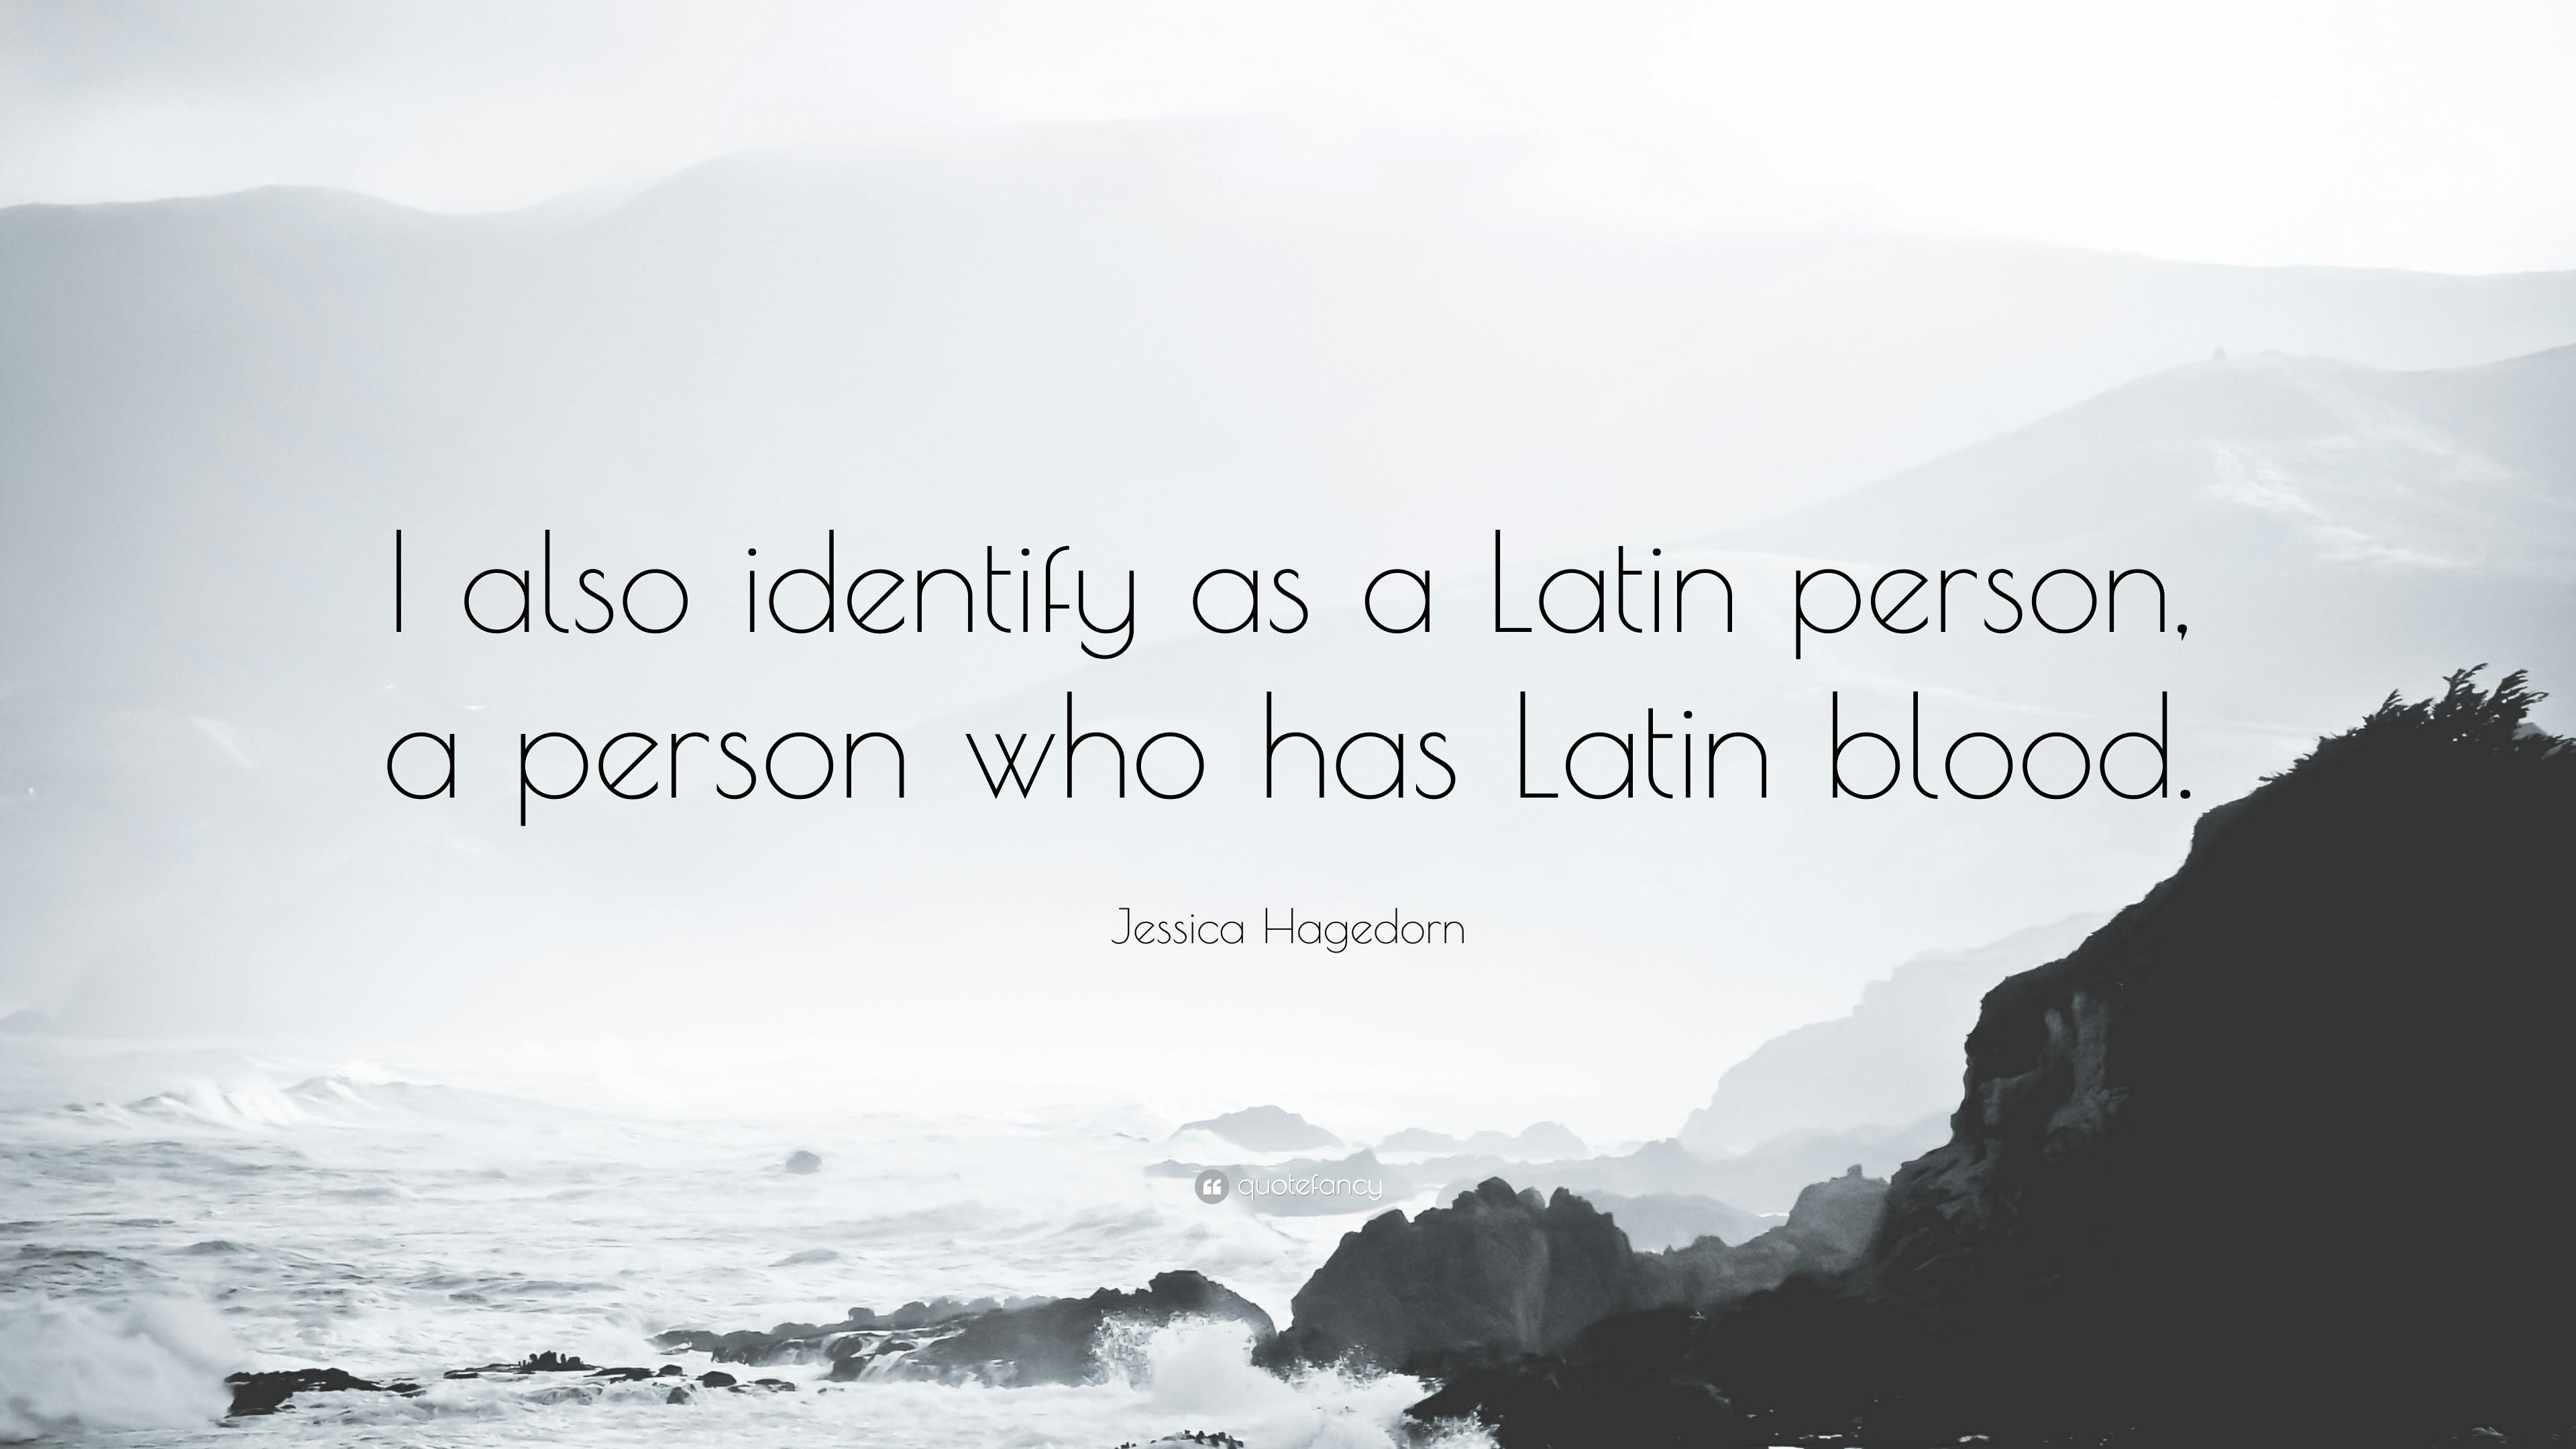 Jessica Hagedorn Quote: “I also identify as a Latin person, a person